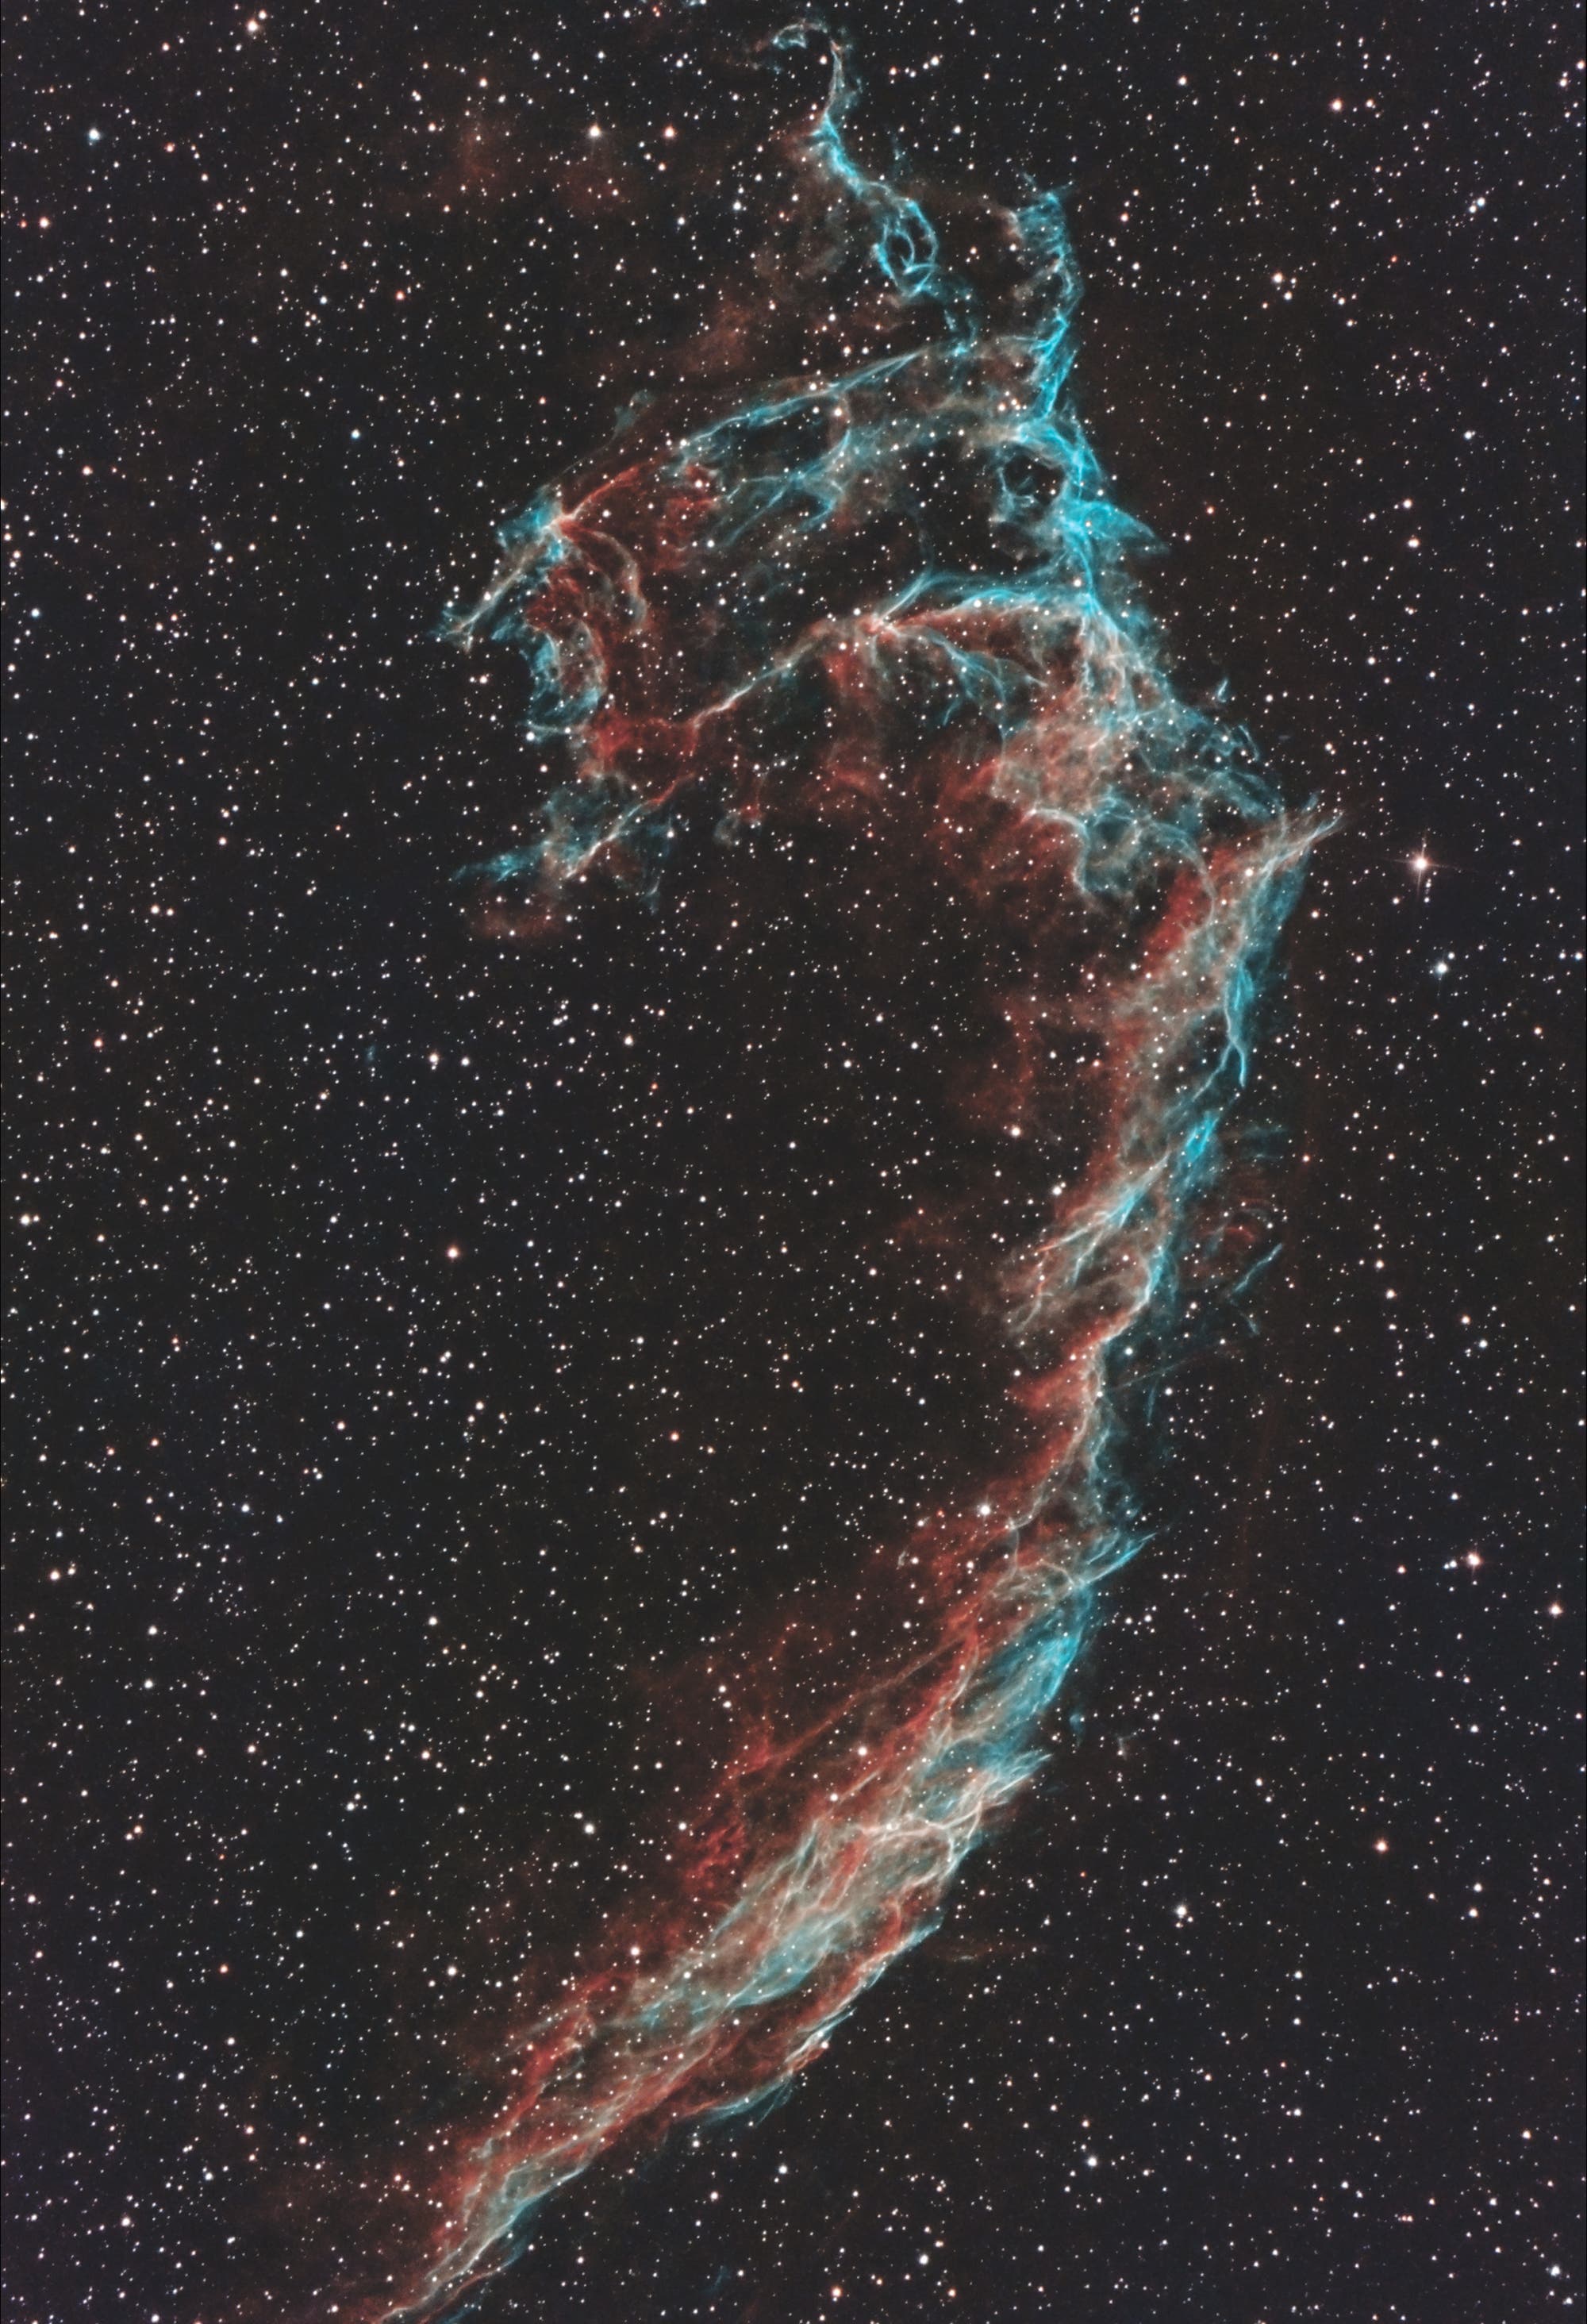 NGC 6995 